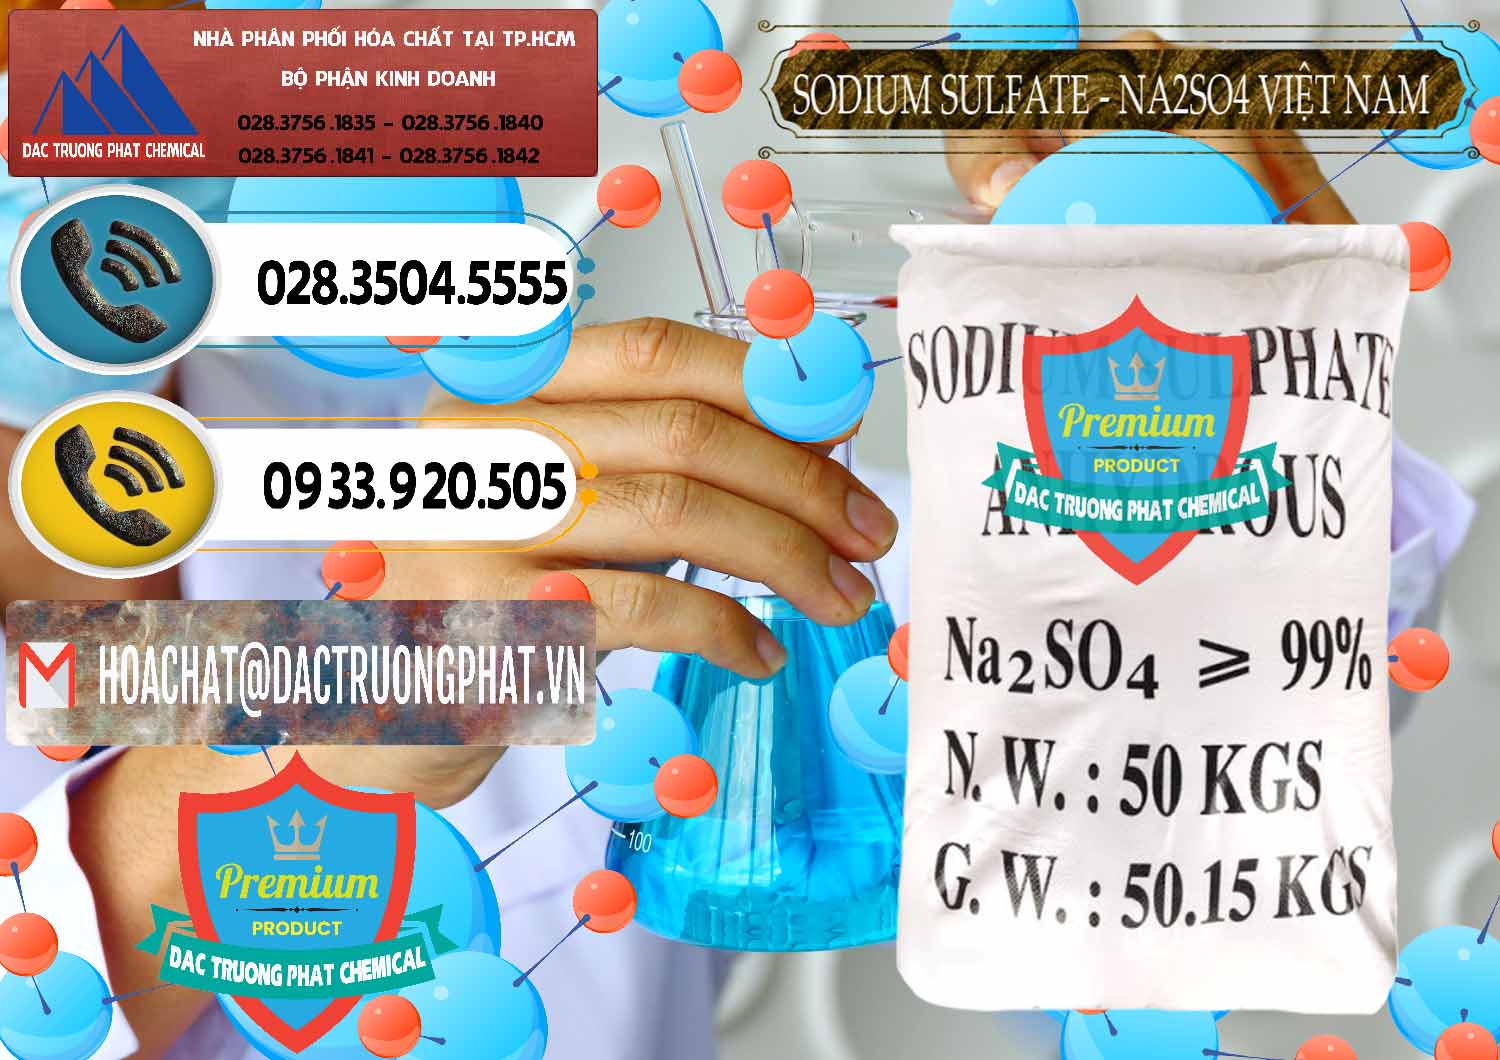 Công ty cung cấp _ bán Sodium Sulphate - Muối Sunfat Na2SO4 Việt Nam - 0355 - Nơi chuyên bán _ phân phối hóa chất tại TP.HCM - hoachatdetnhuom.vn